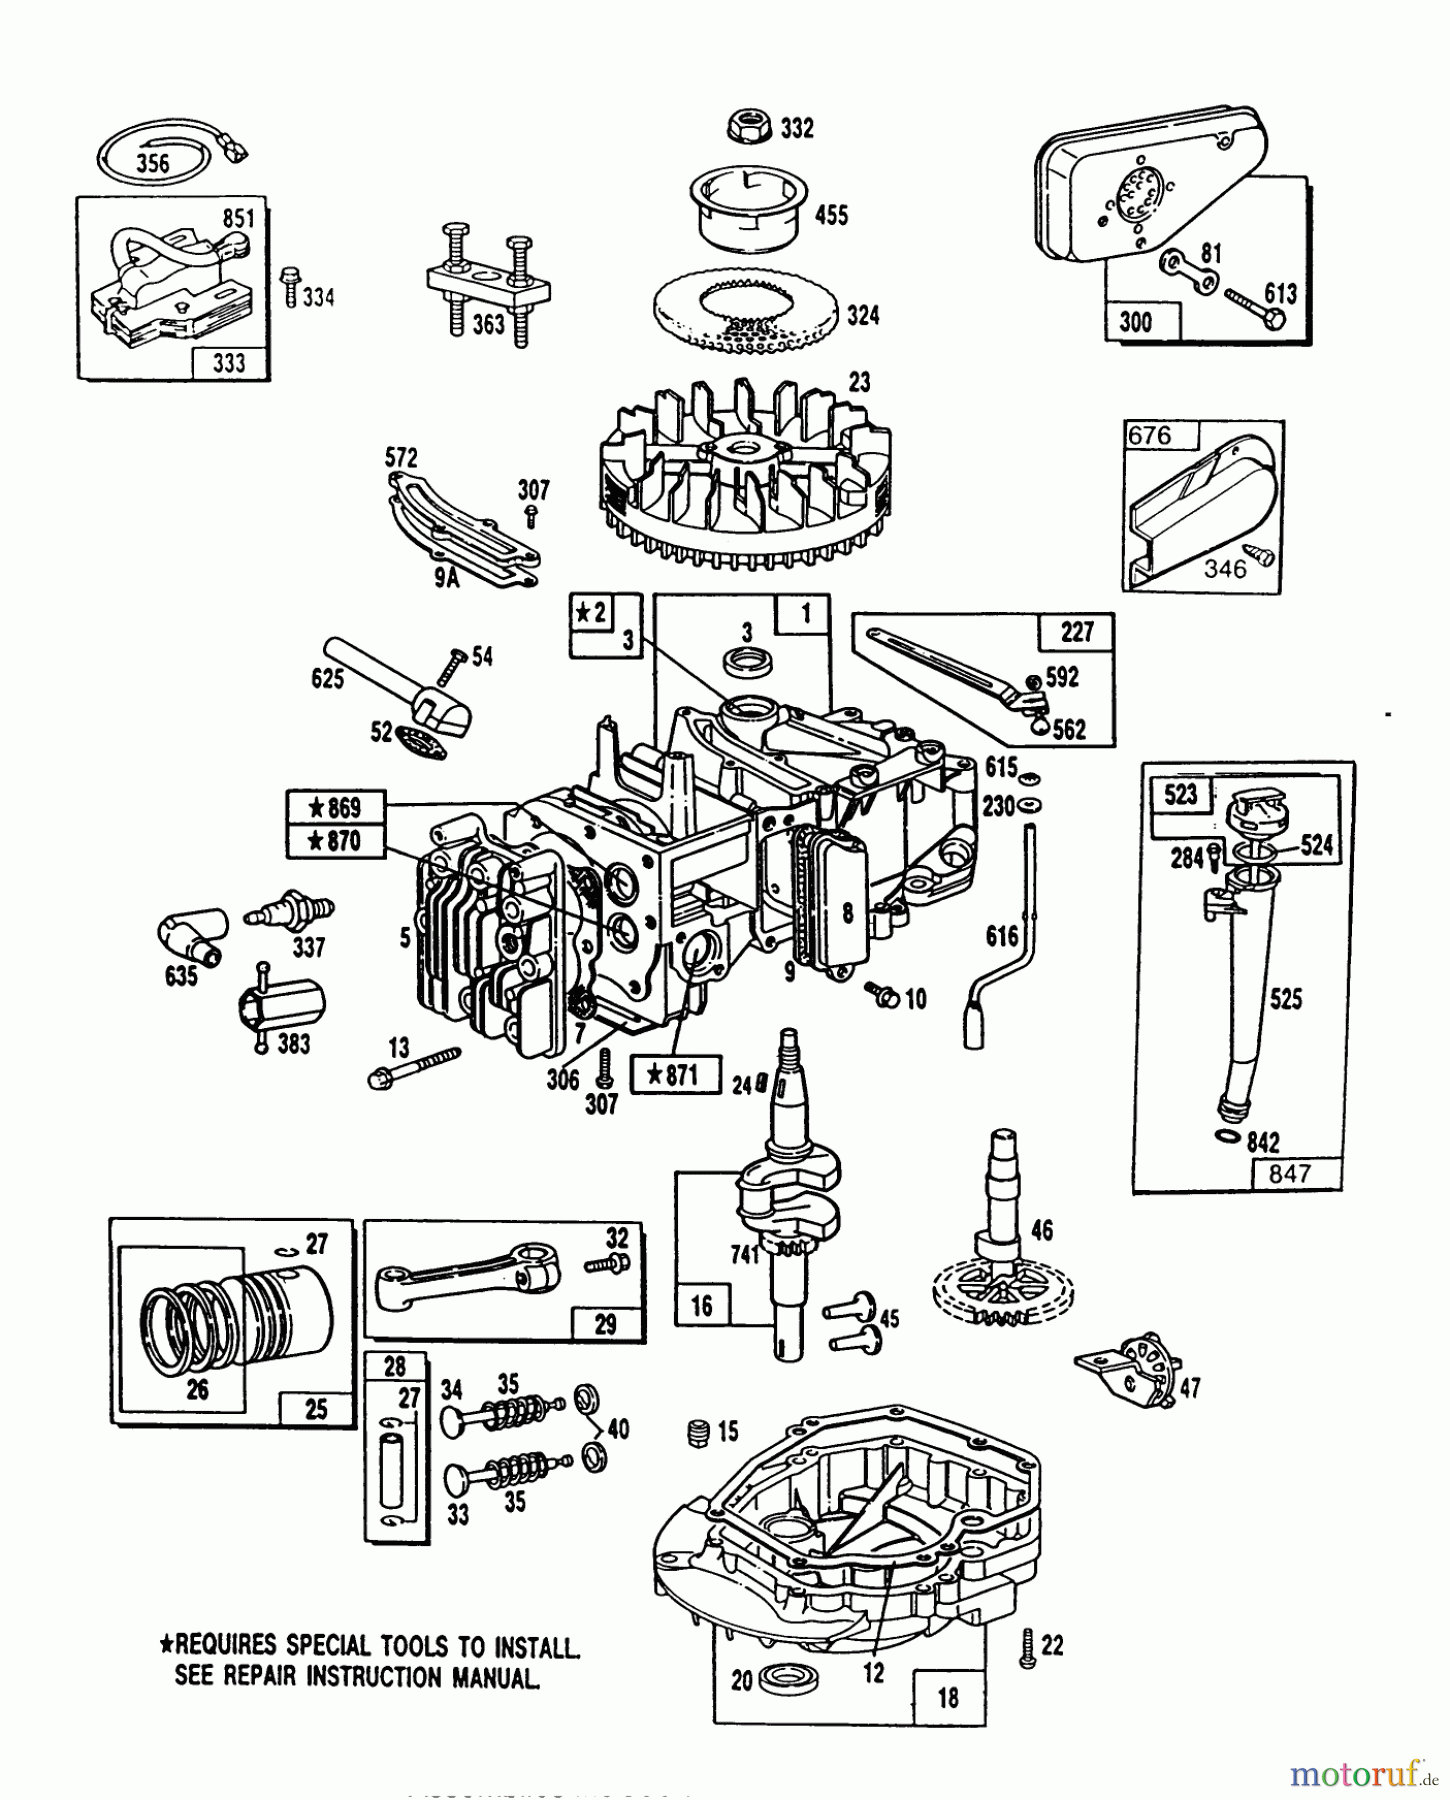  Toro Neu Mowers, Walk-Behind Seite 1 20667 - Toro Lawnmower, 1990 (0000001-0999999) ENGINE MODEL NO. 124702-0137-016